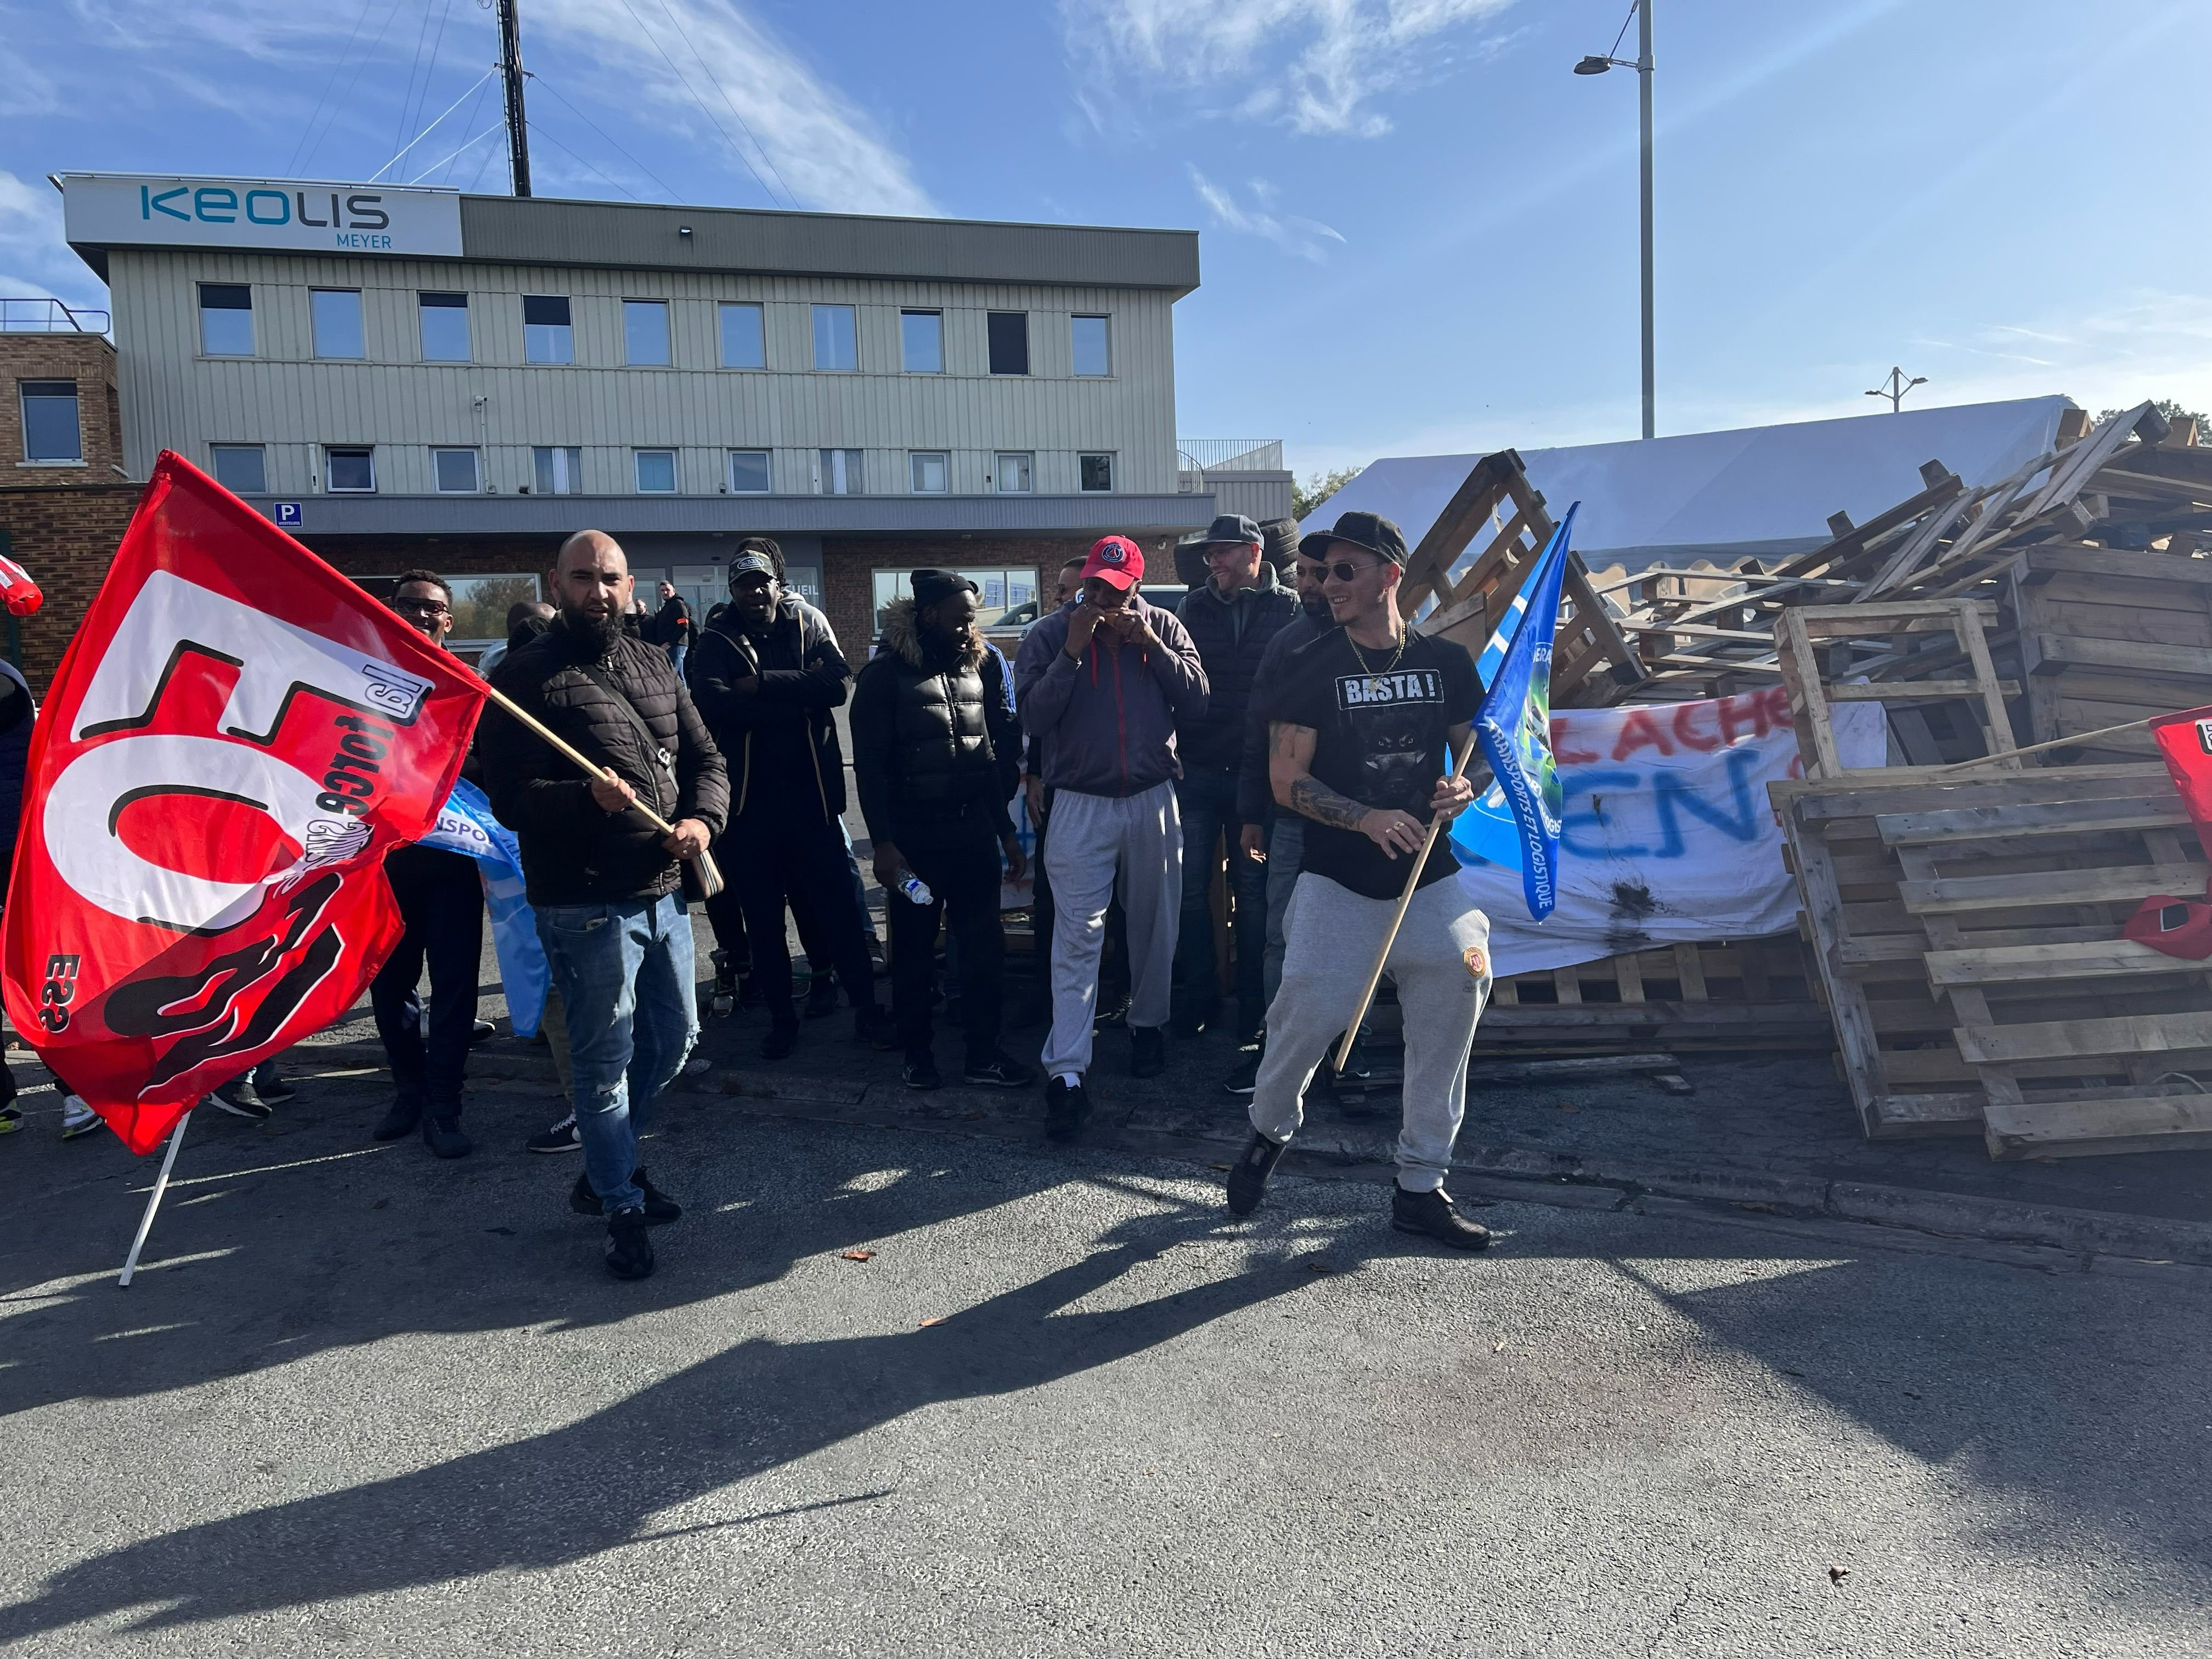 Montlhéry, le 19 octobre. Les grévistes occupent l'entrée du dépôt de la compagnie de transport Keolis Meyer depuis le 13 octobre. LP/Nolwenn Cosson